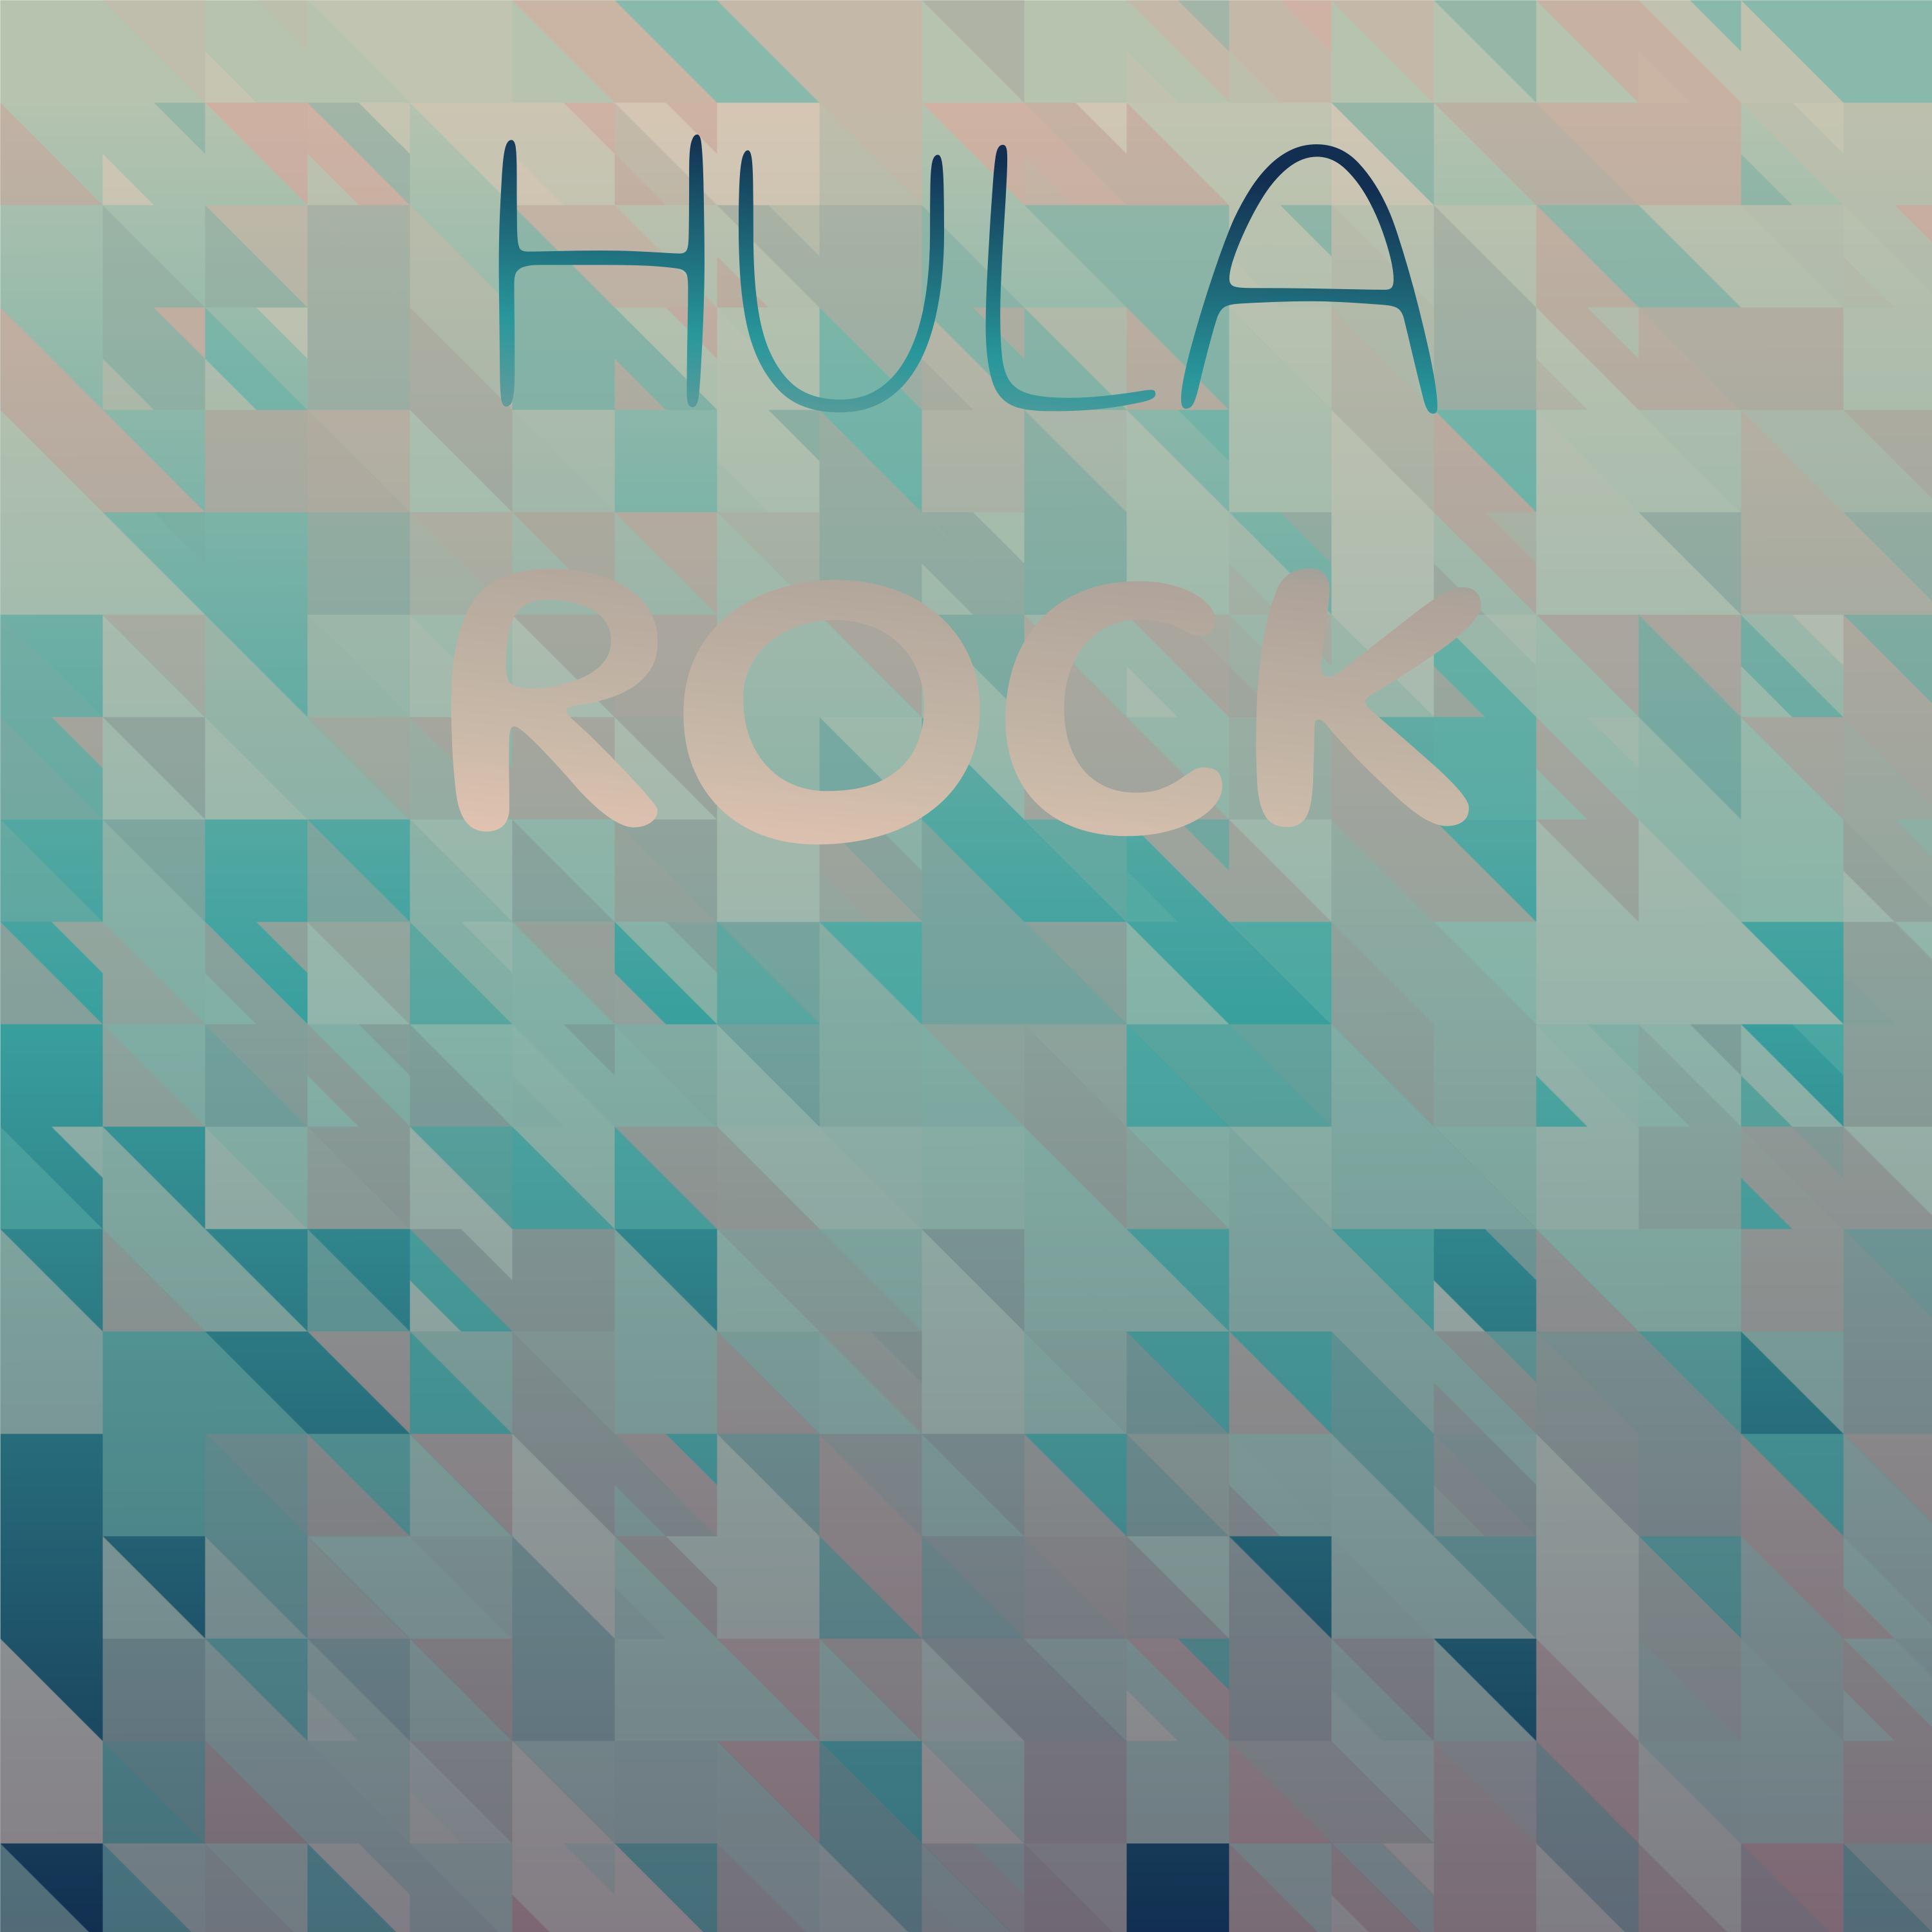 Ted Herold - Hula Rock